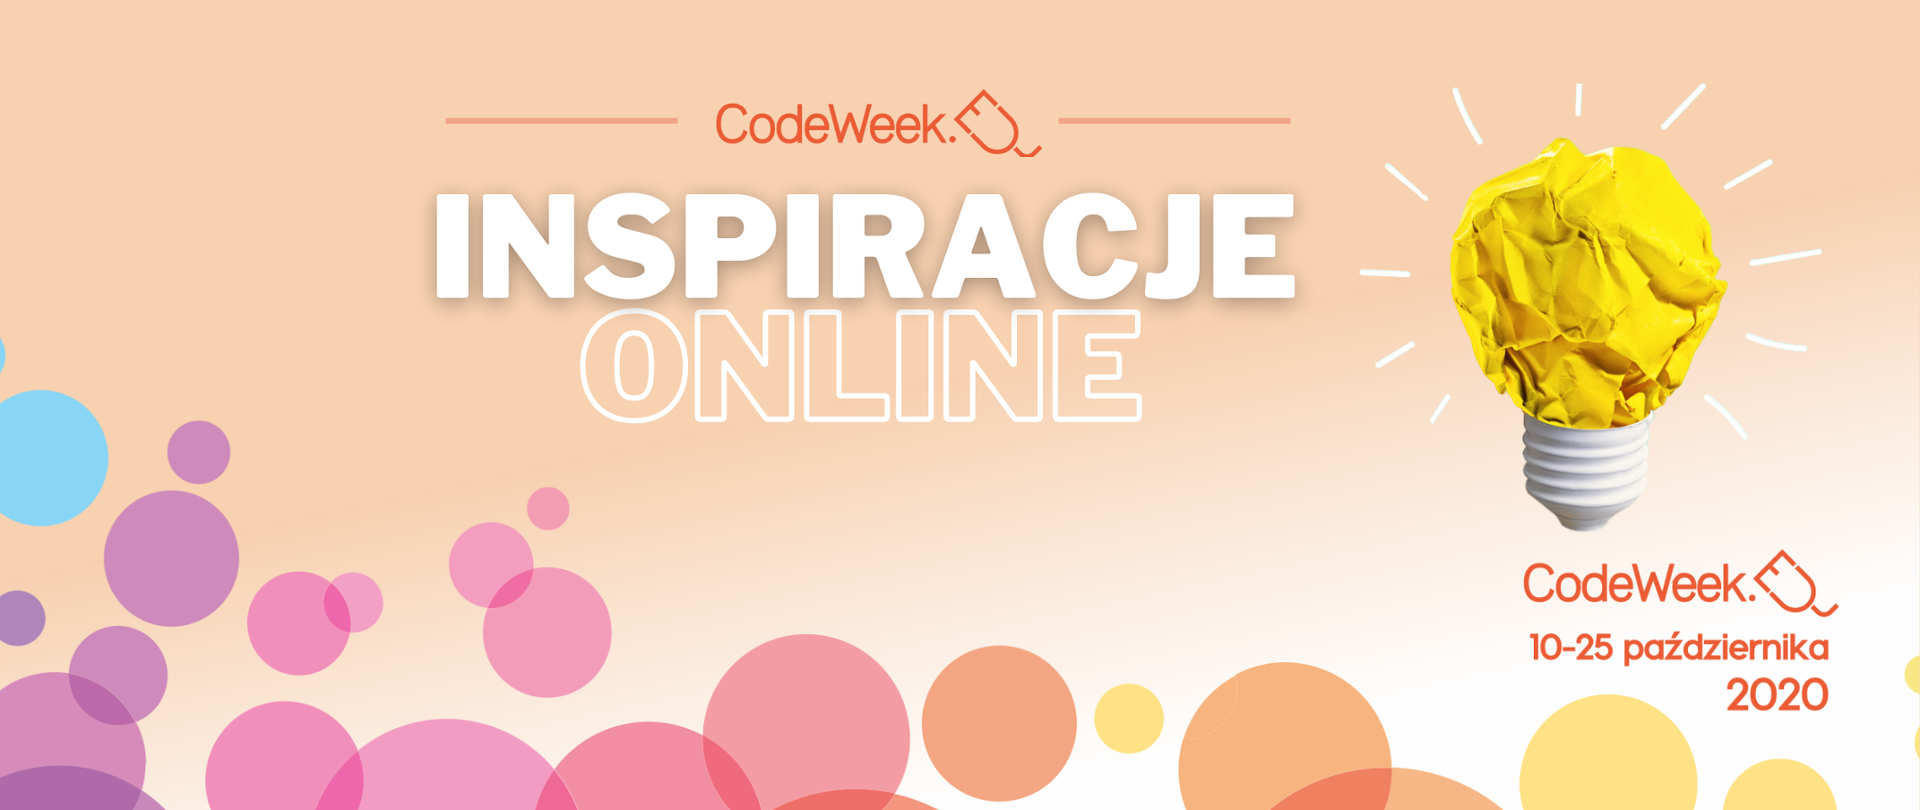 Grafika przedstiawia napis "Code Week: Inspiracje online" 10:-25 października 2020